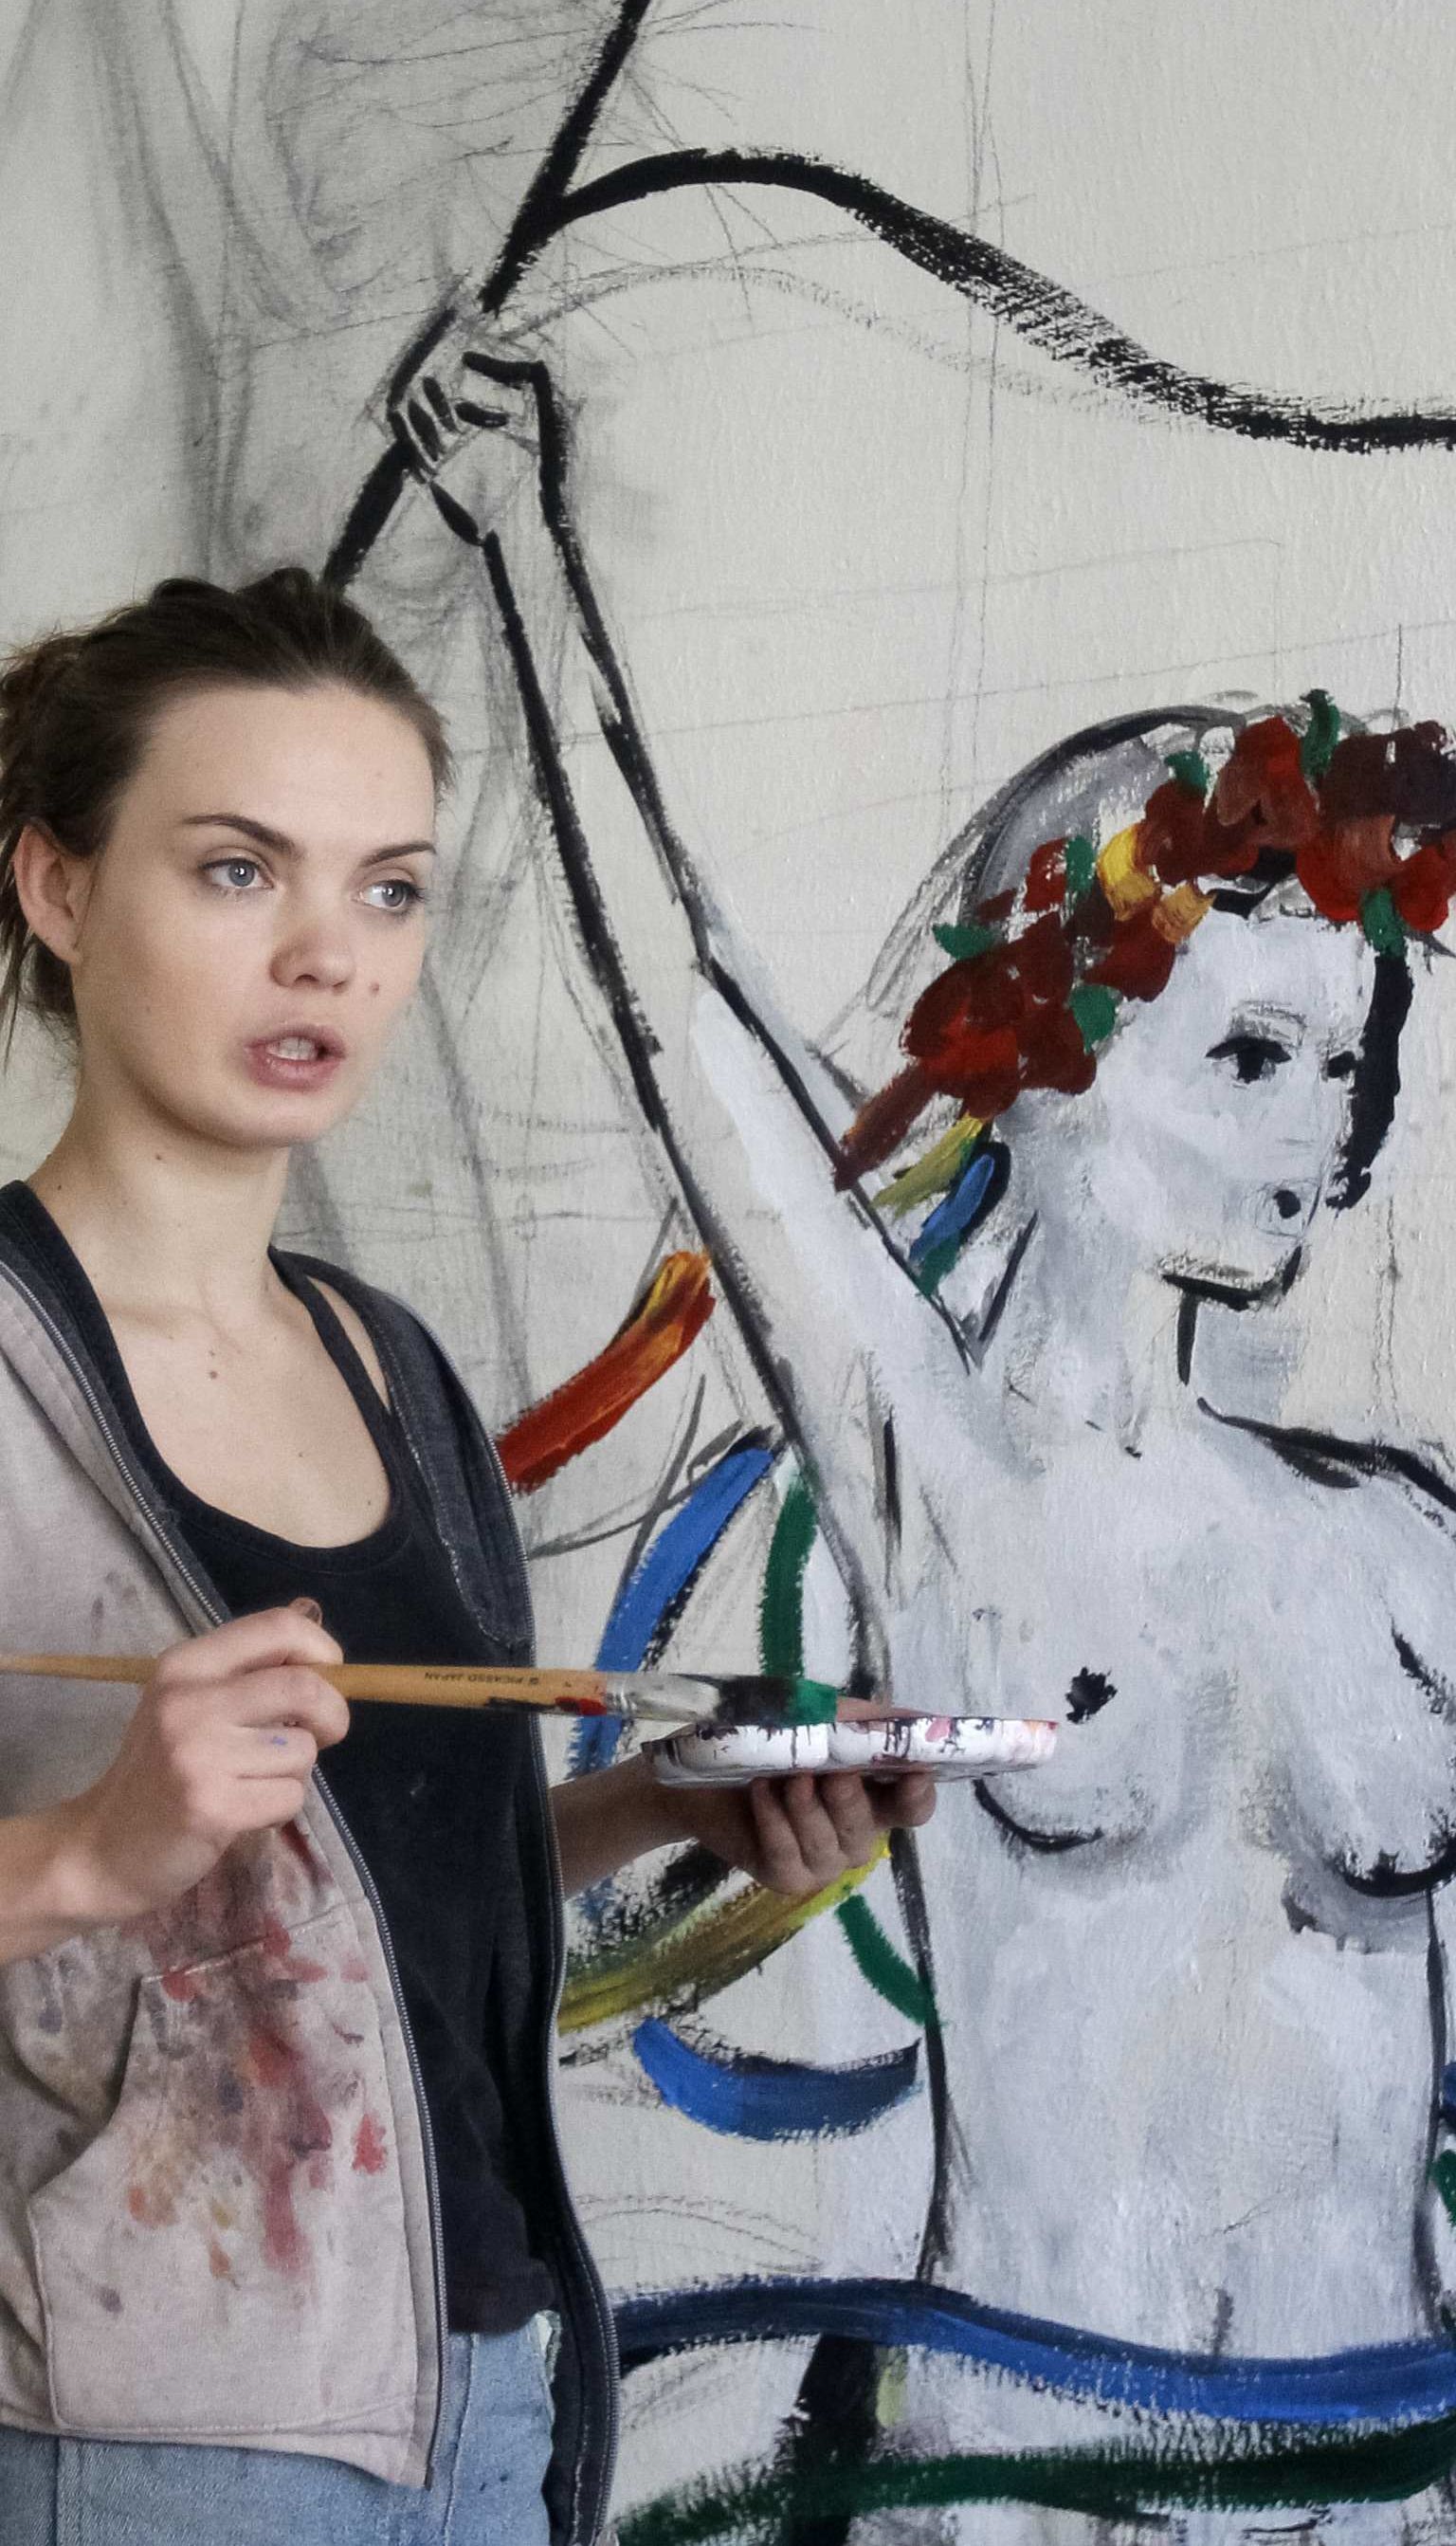 Співзасновниця Femen повісилась у шафі після сварки з бойфрендом – подруга